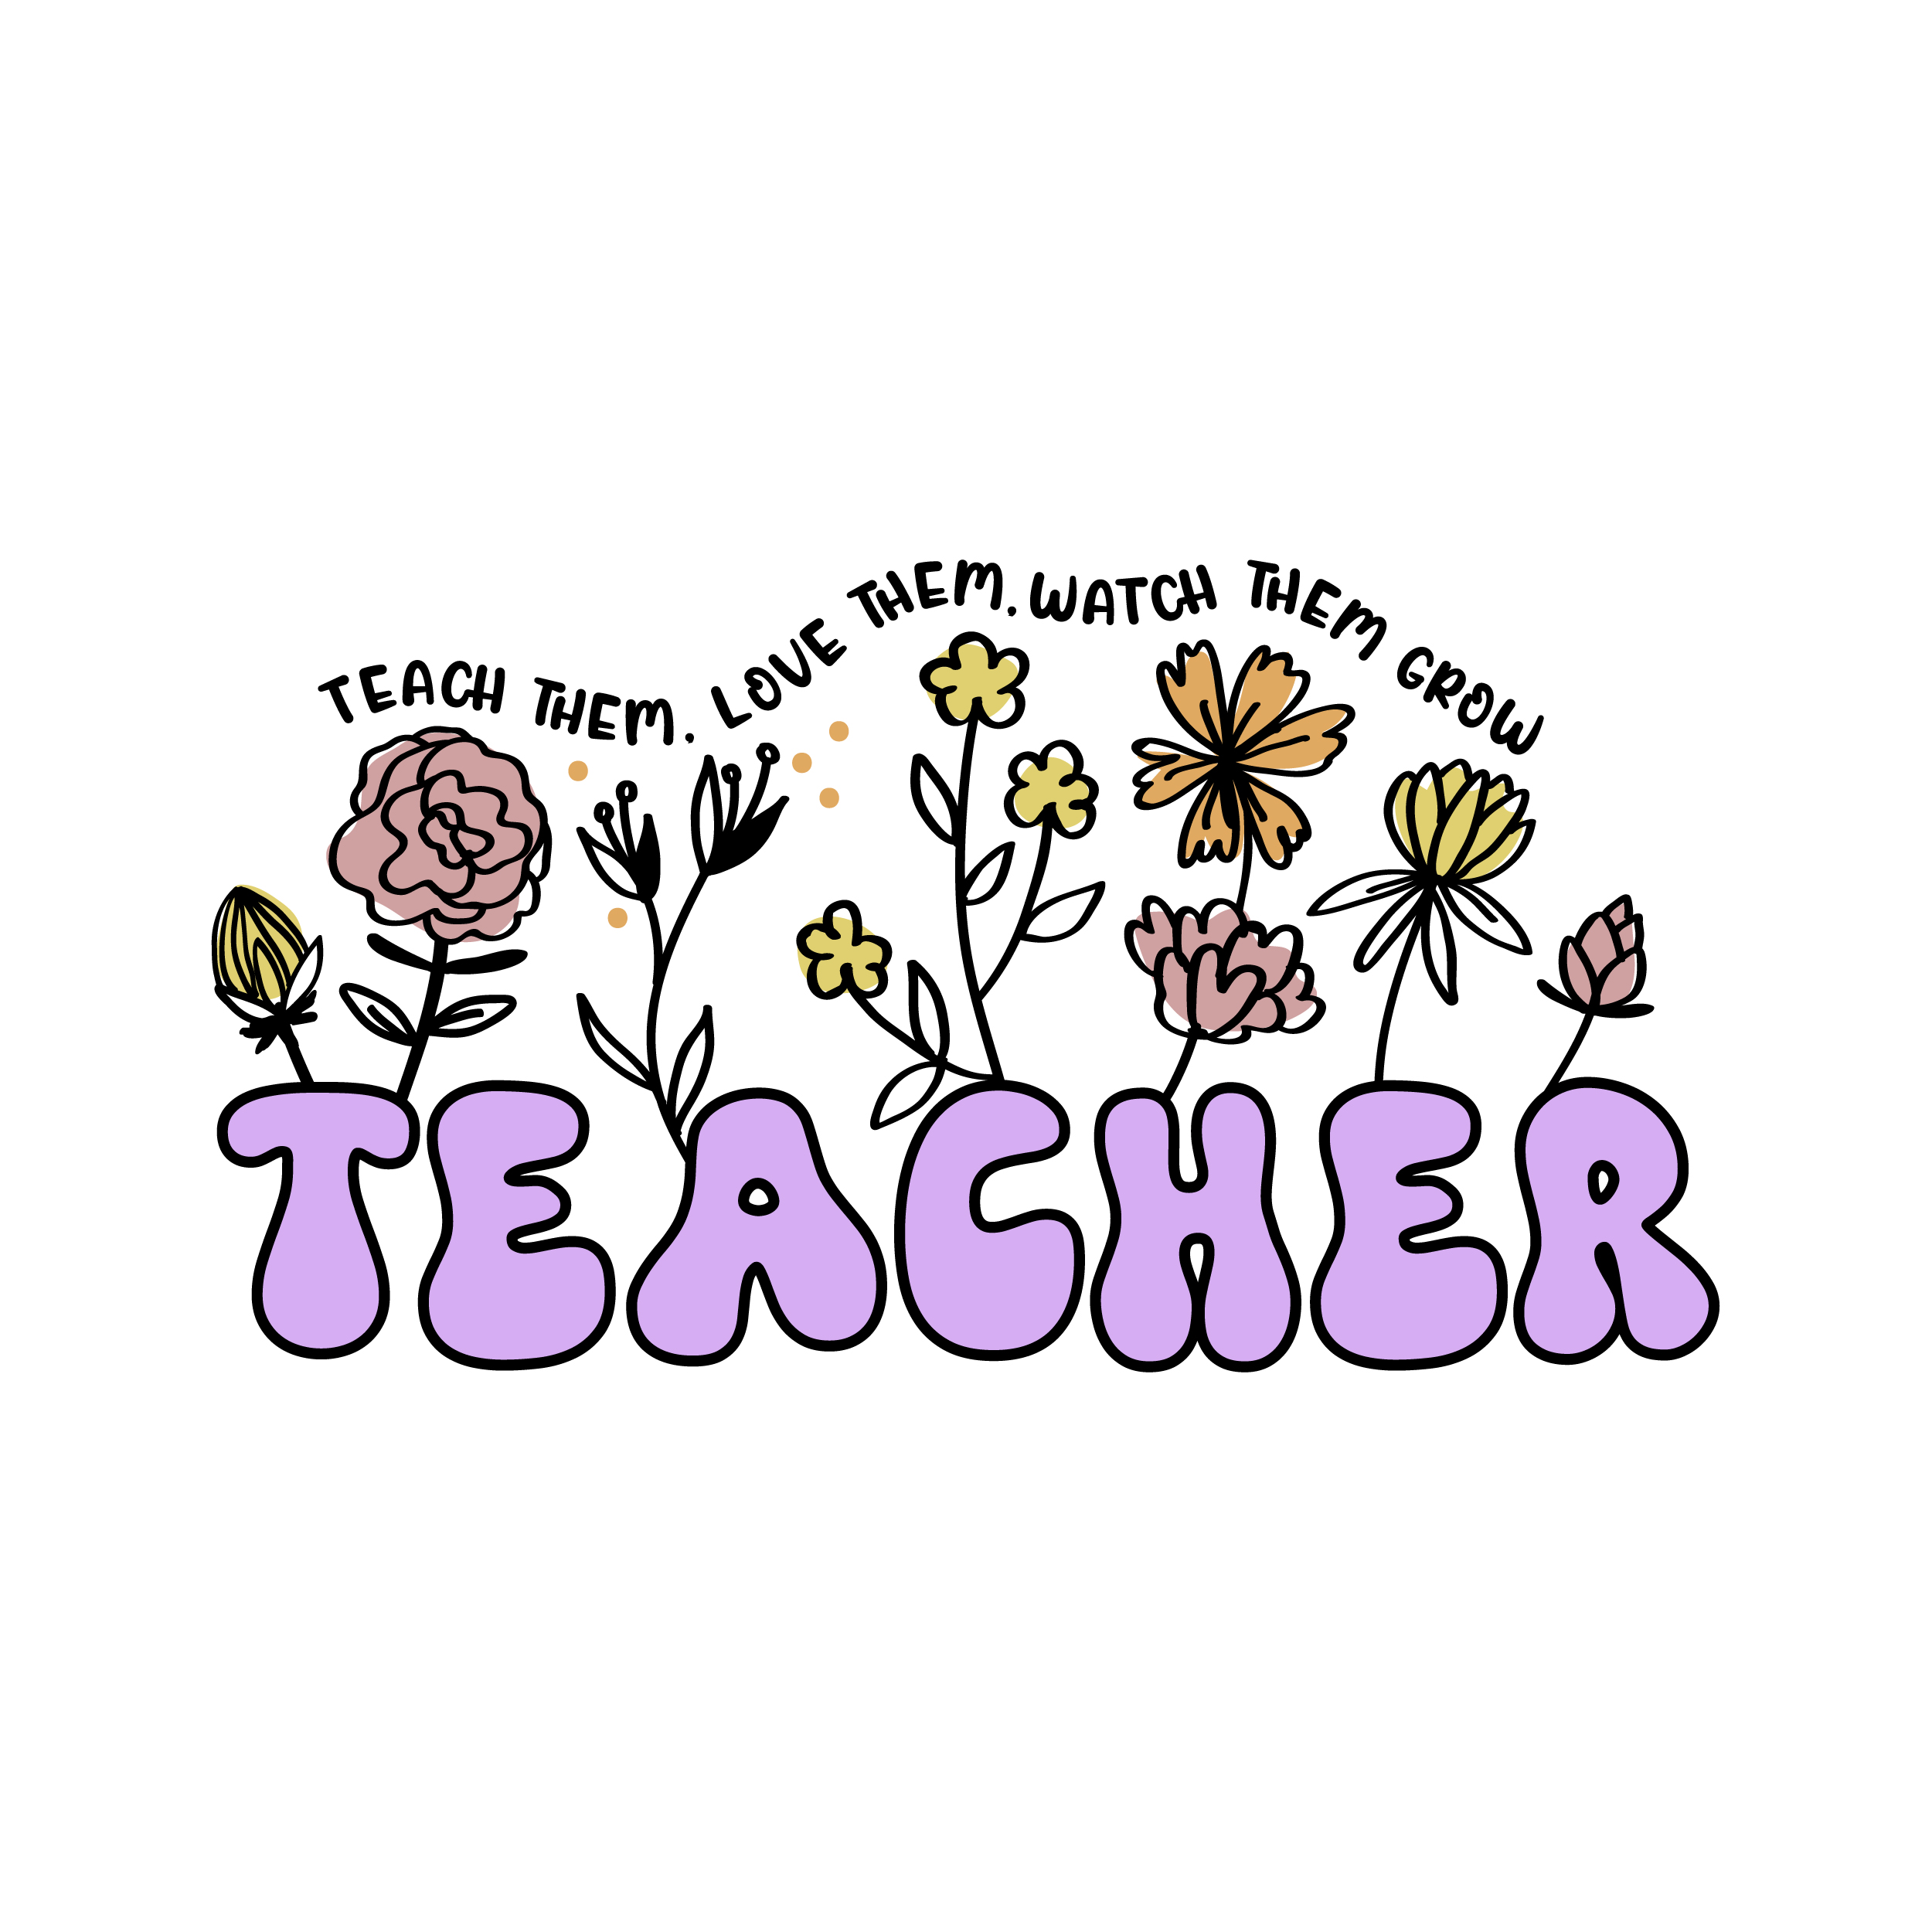 Teach Them Watch Them Watch Them Grow Teacher SVG Flowers Cuttable Design